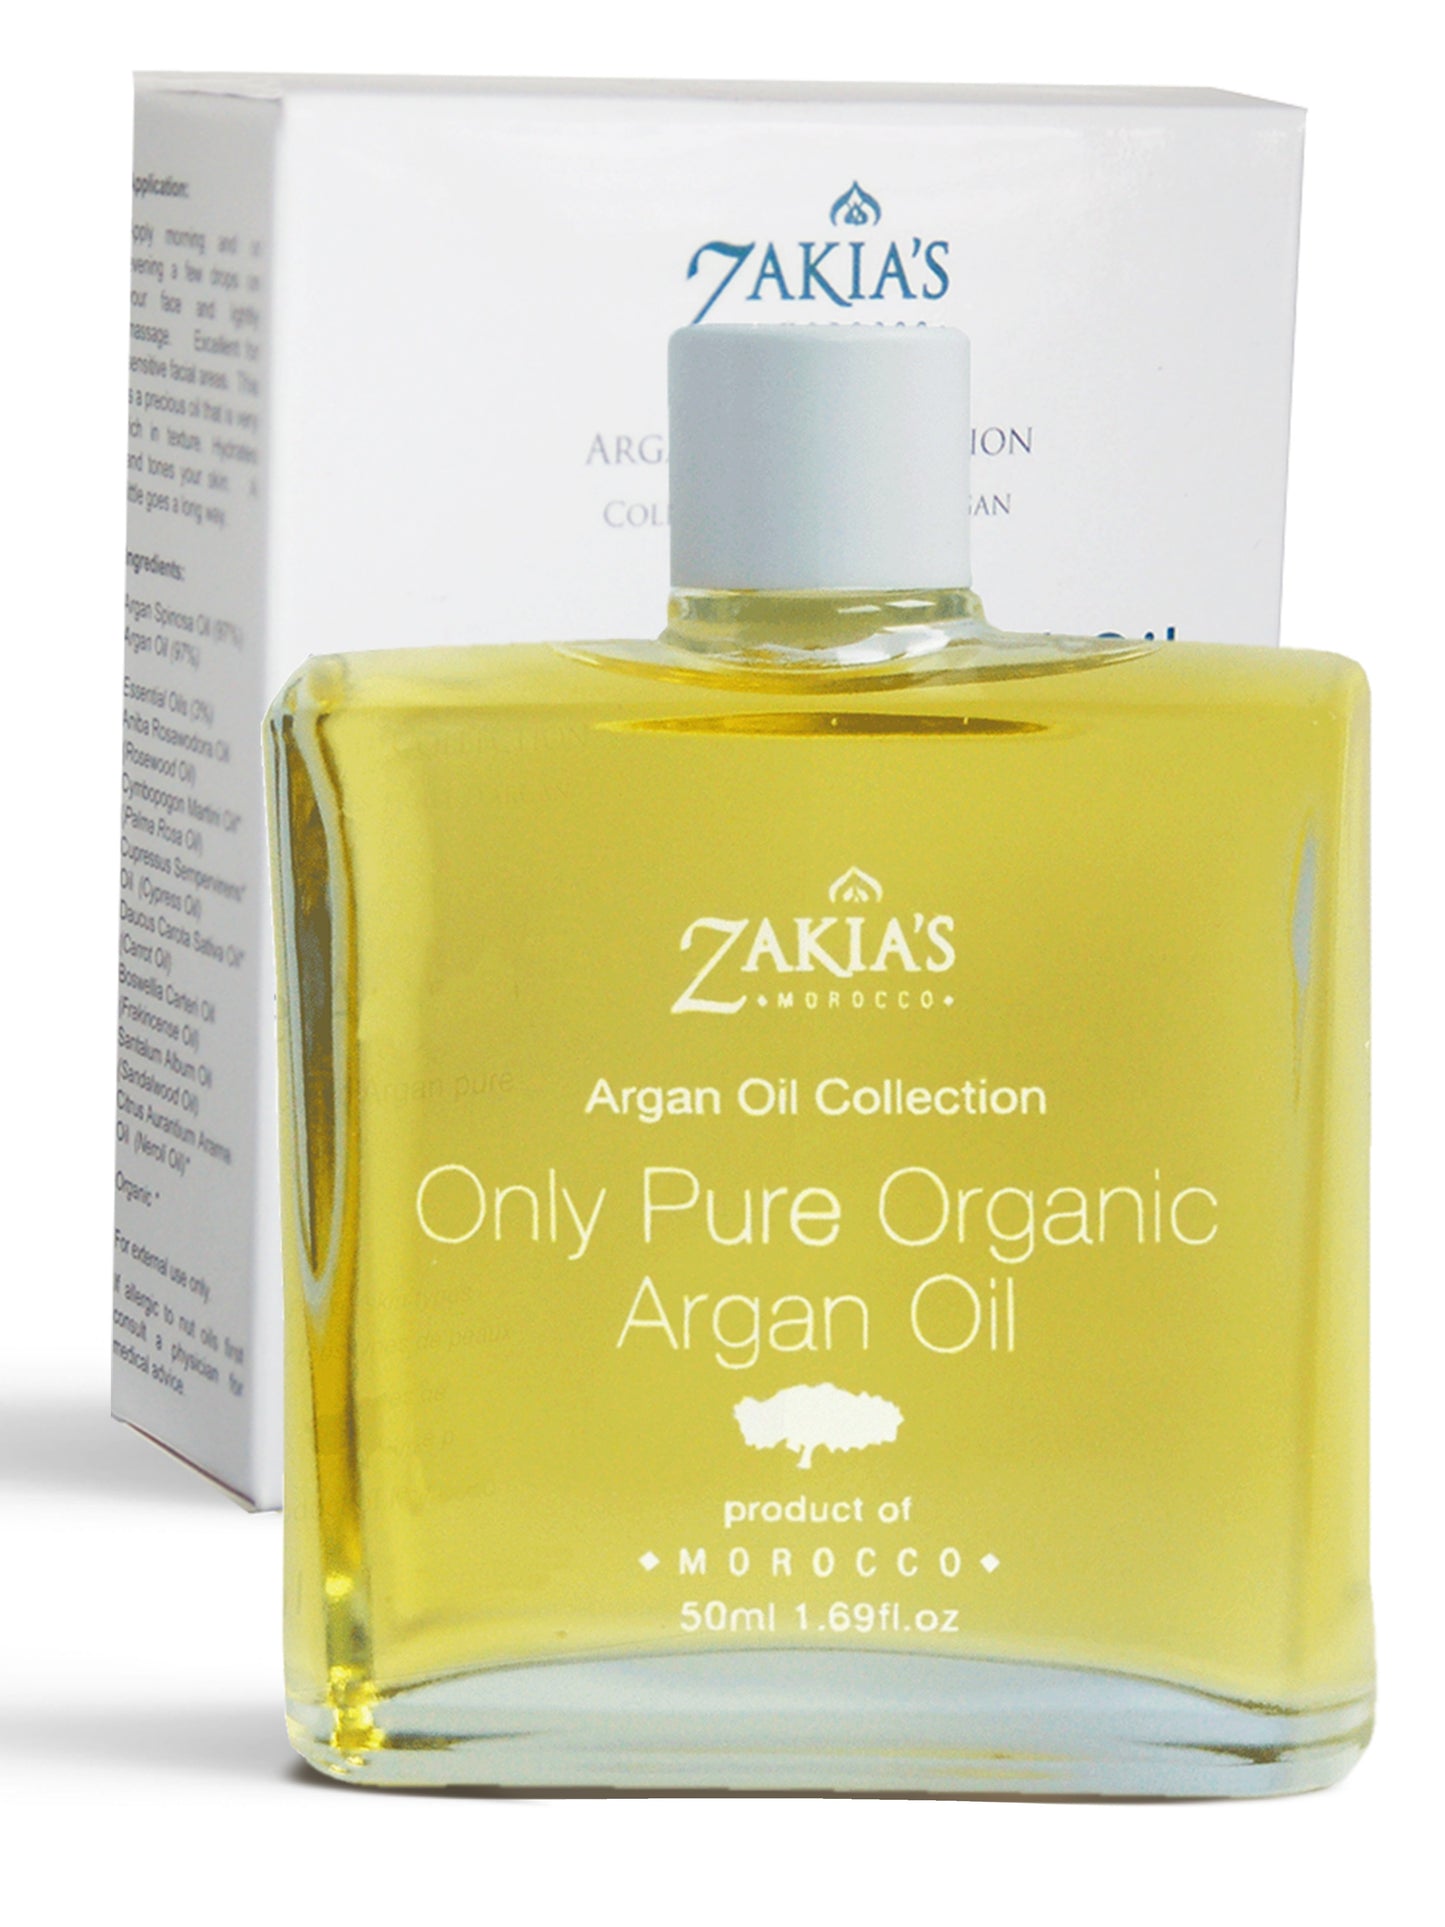 Argan Oil Hydrating Facial Serum